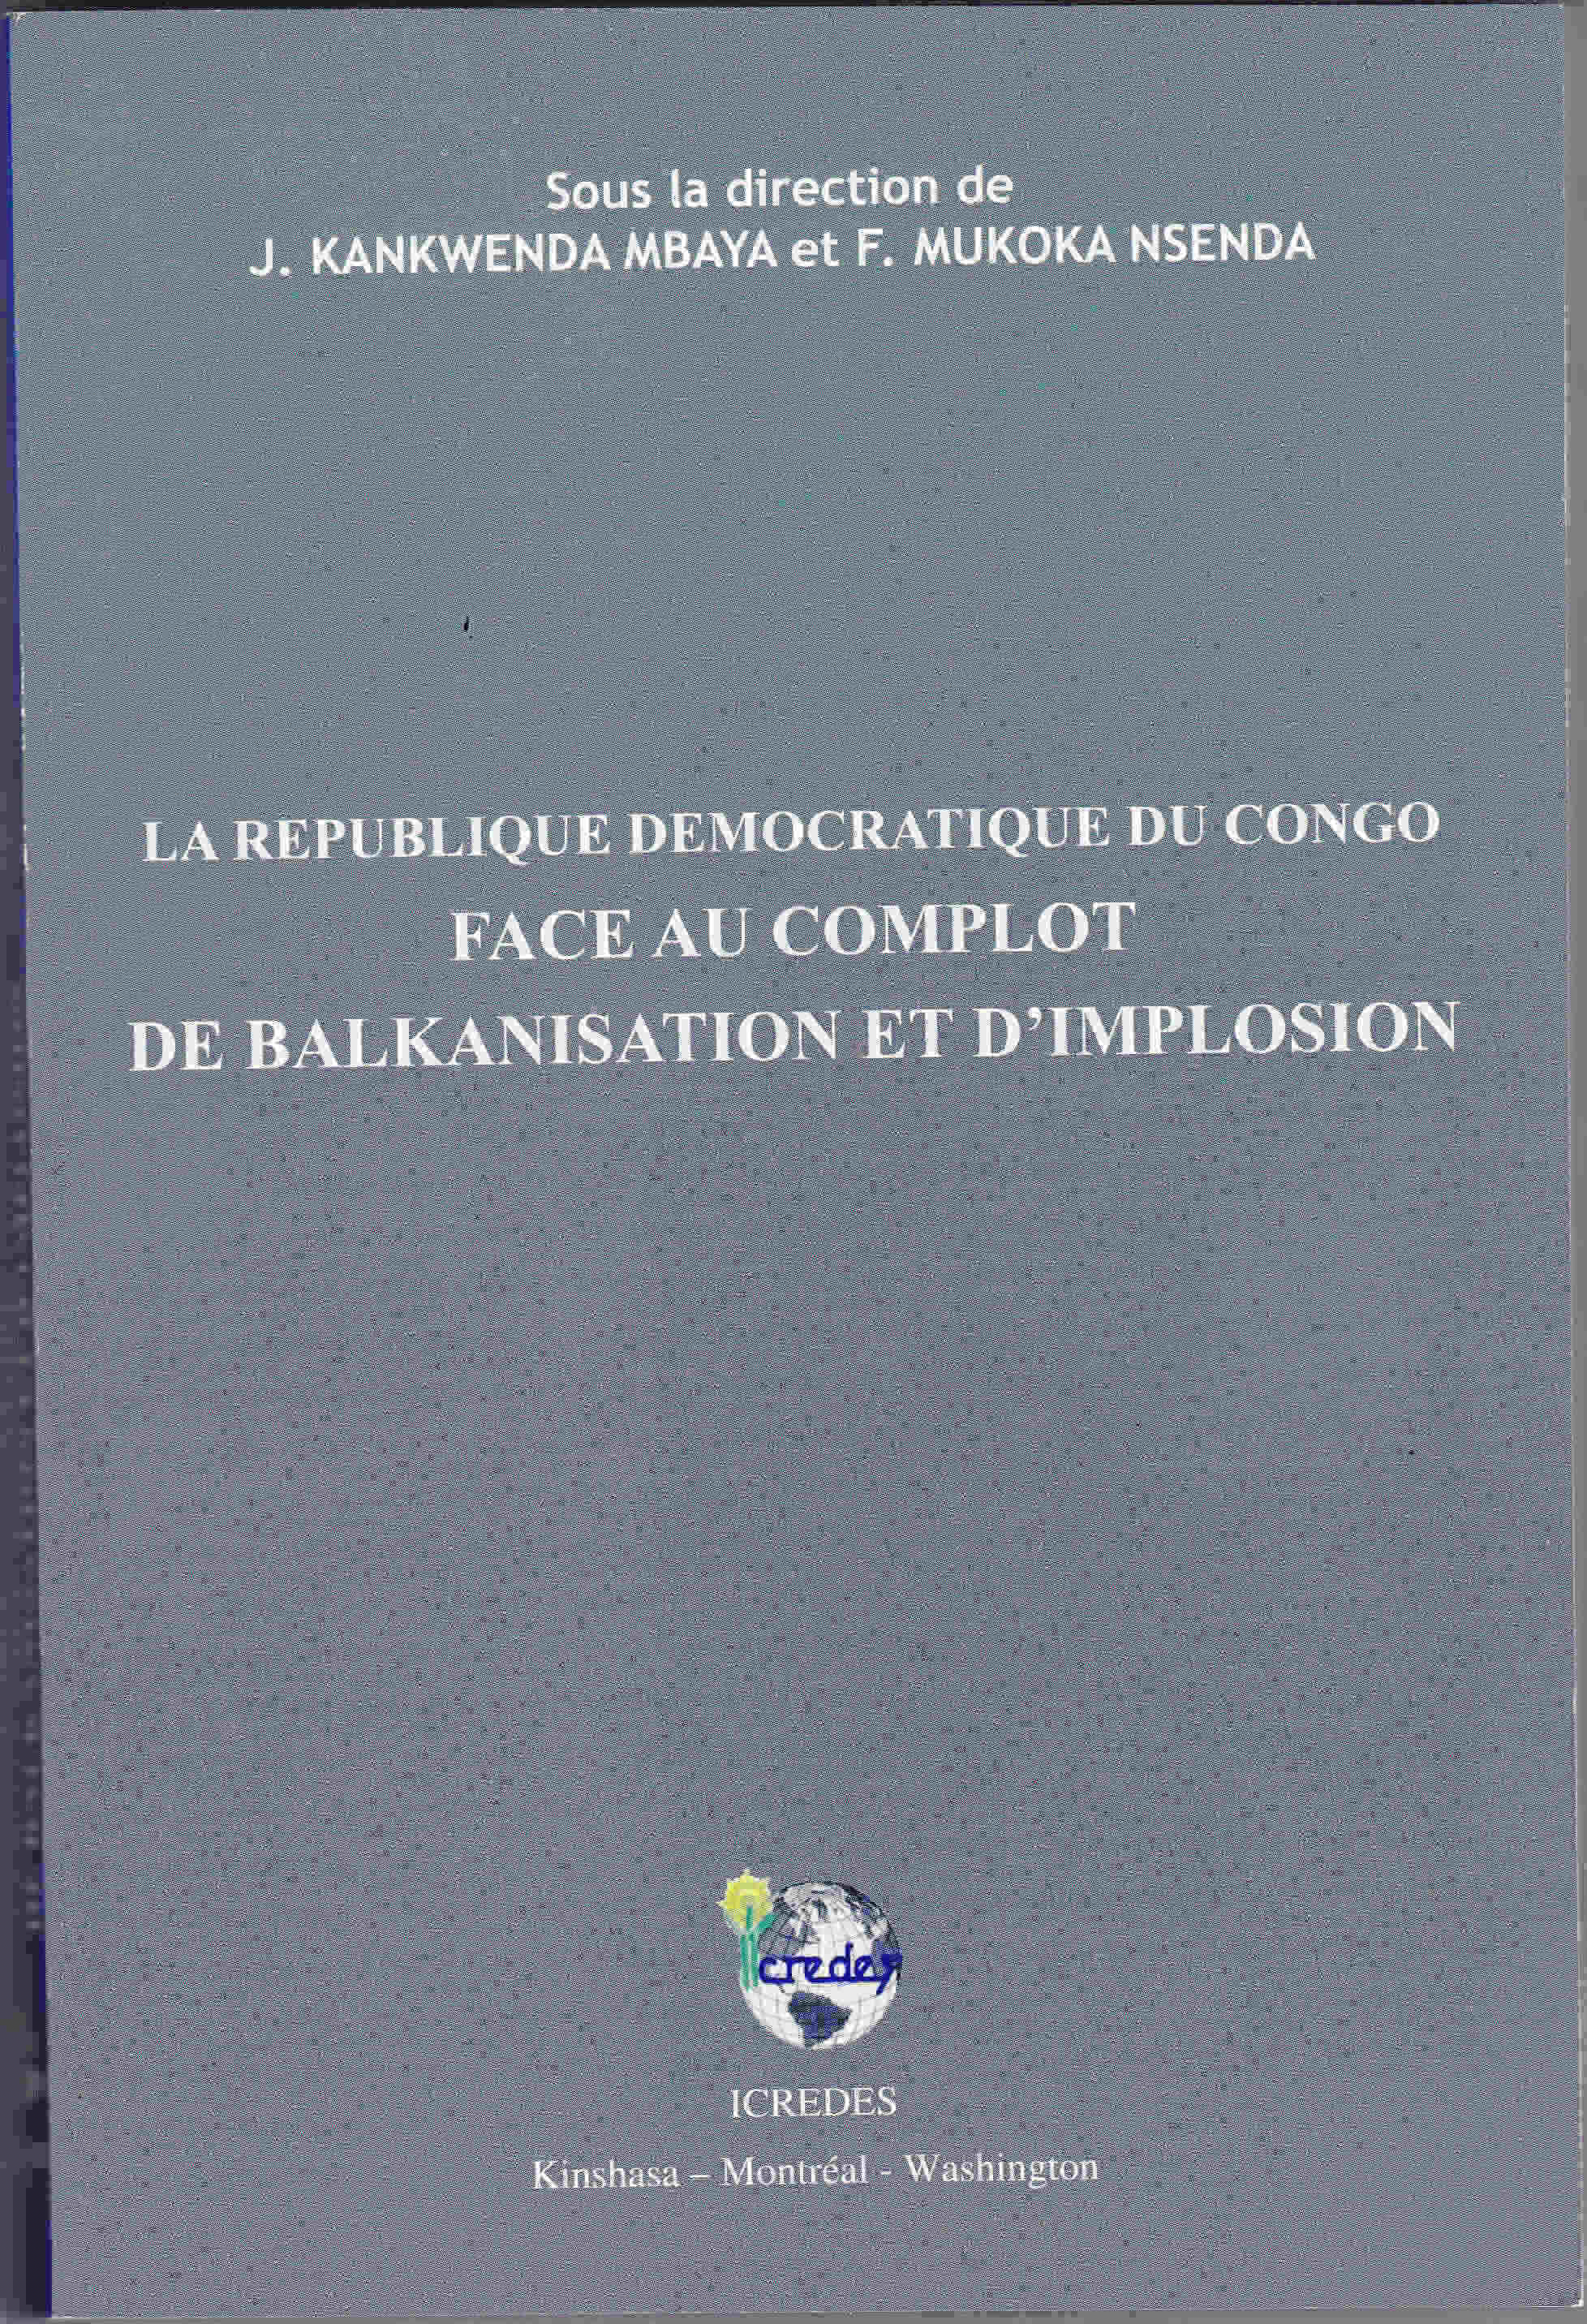 La République Démocratique du Congo face au complot de balkanisation et d’implosion